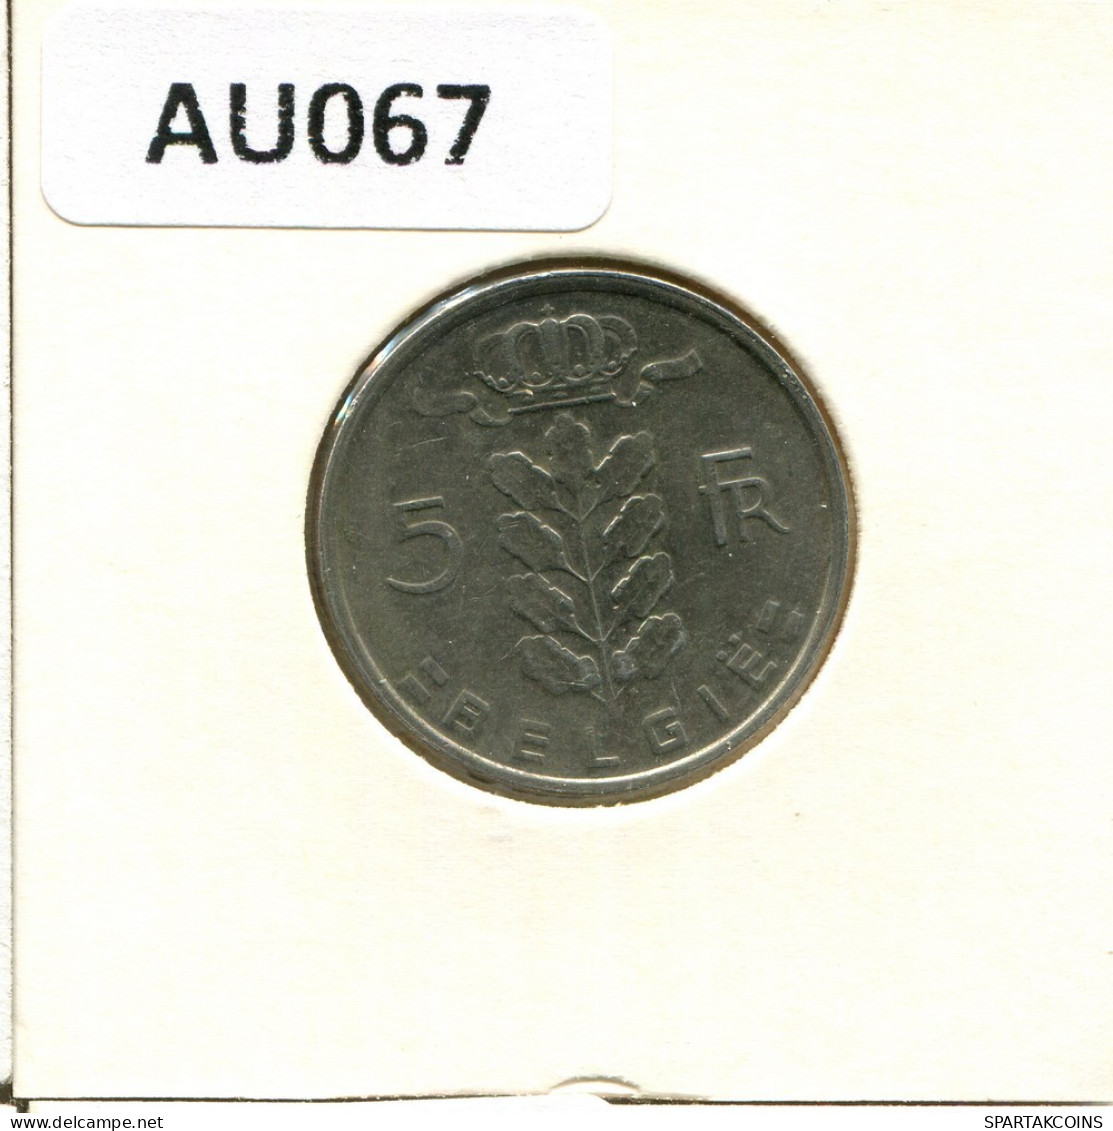 5 FRANCS 1977 DUTCH Text BELGIUM Coin #AU067.U.A - 5 Frank